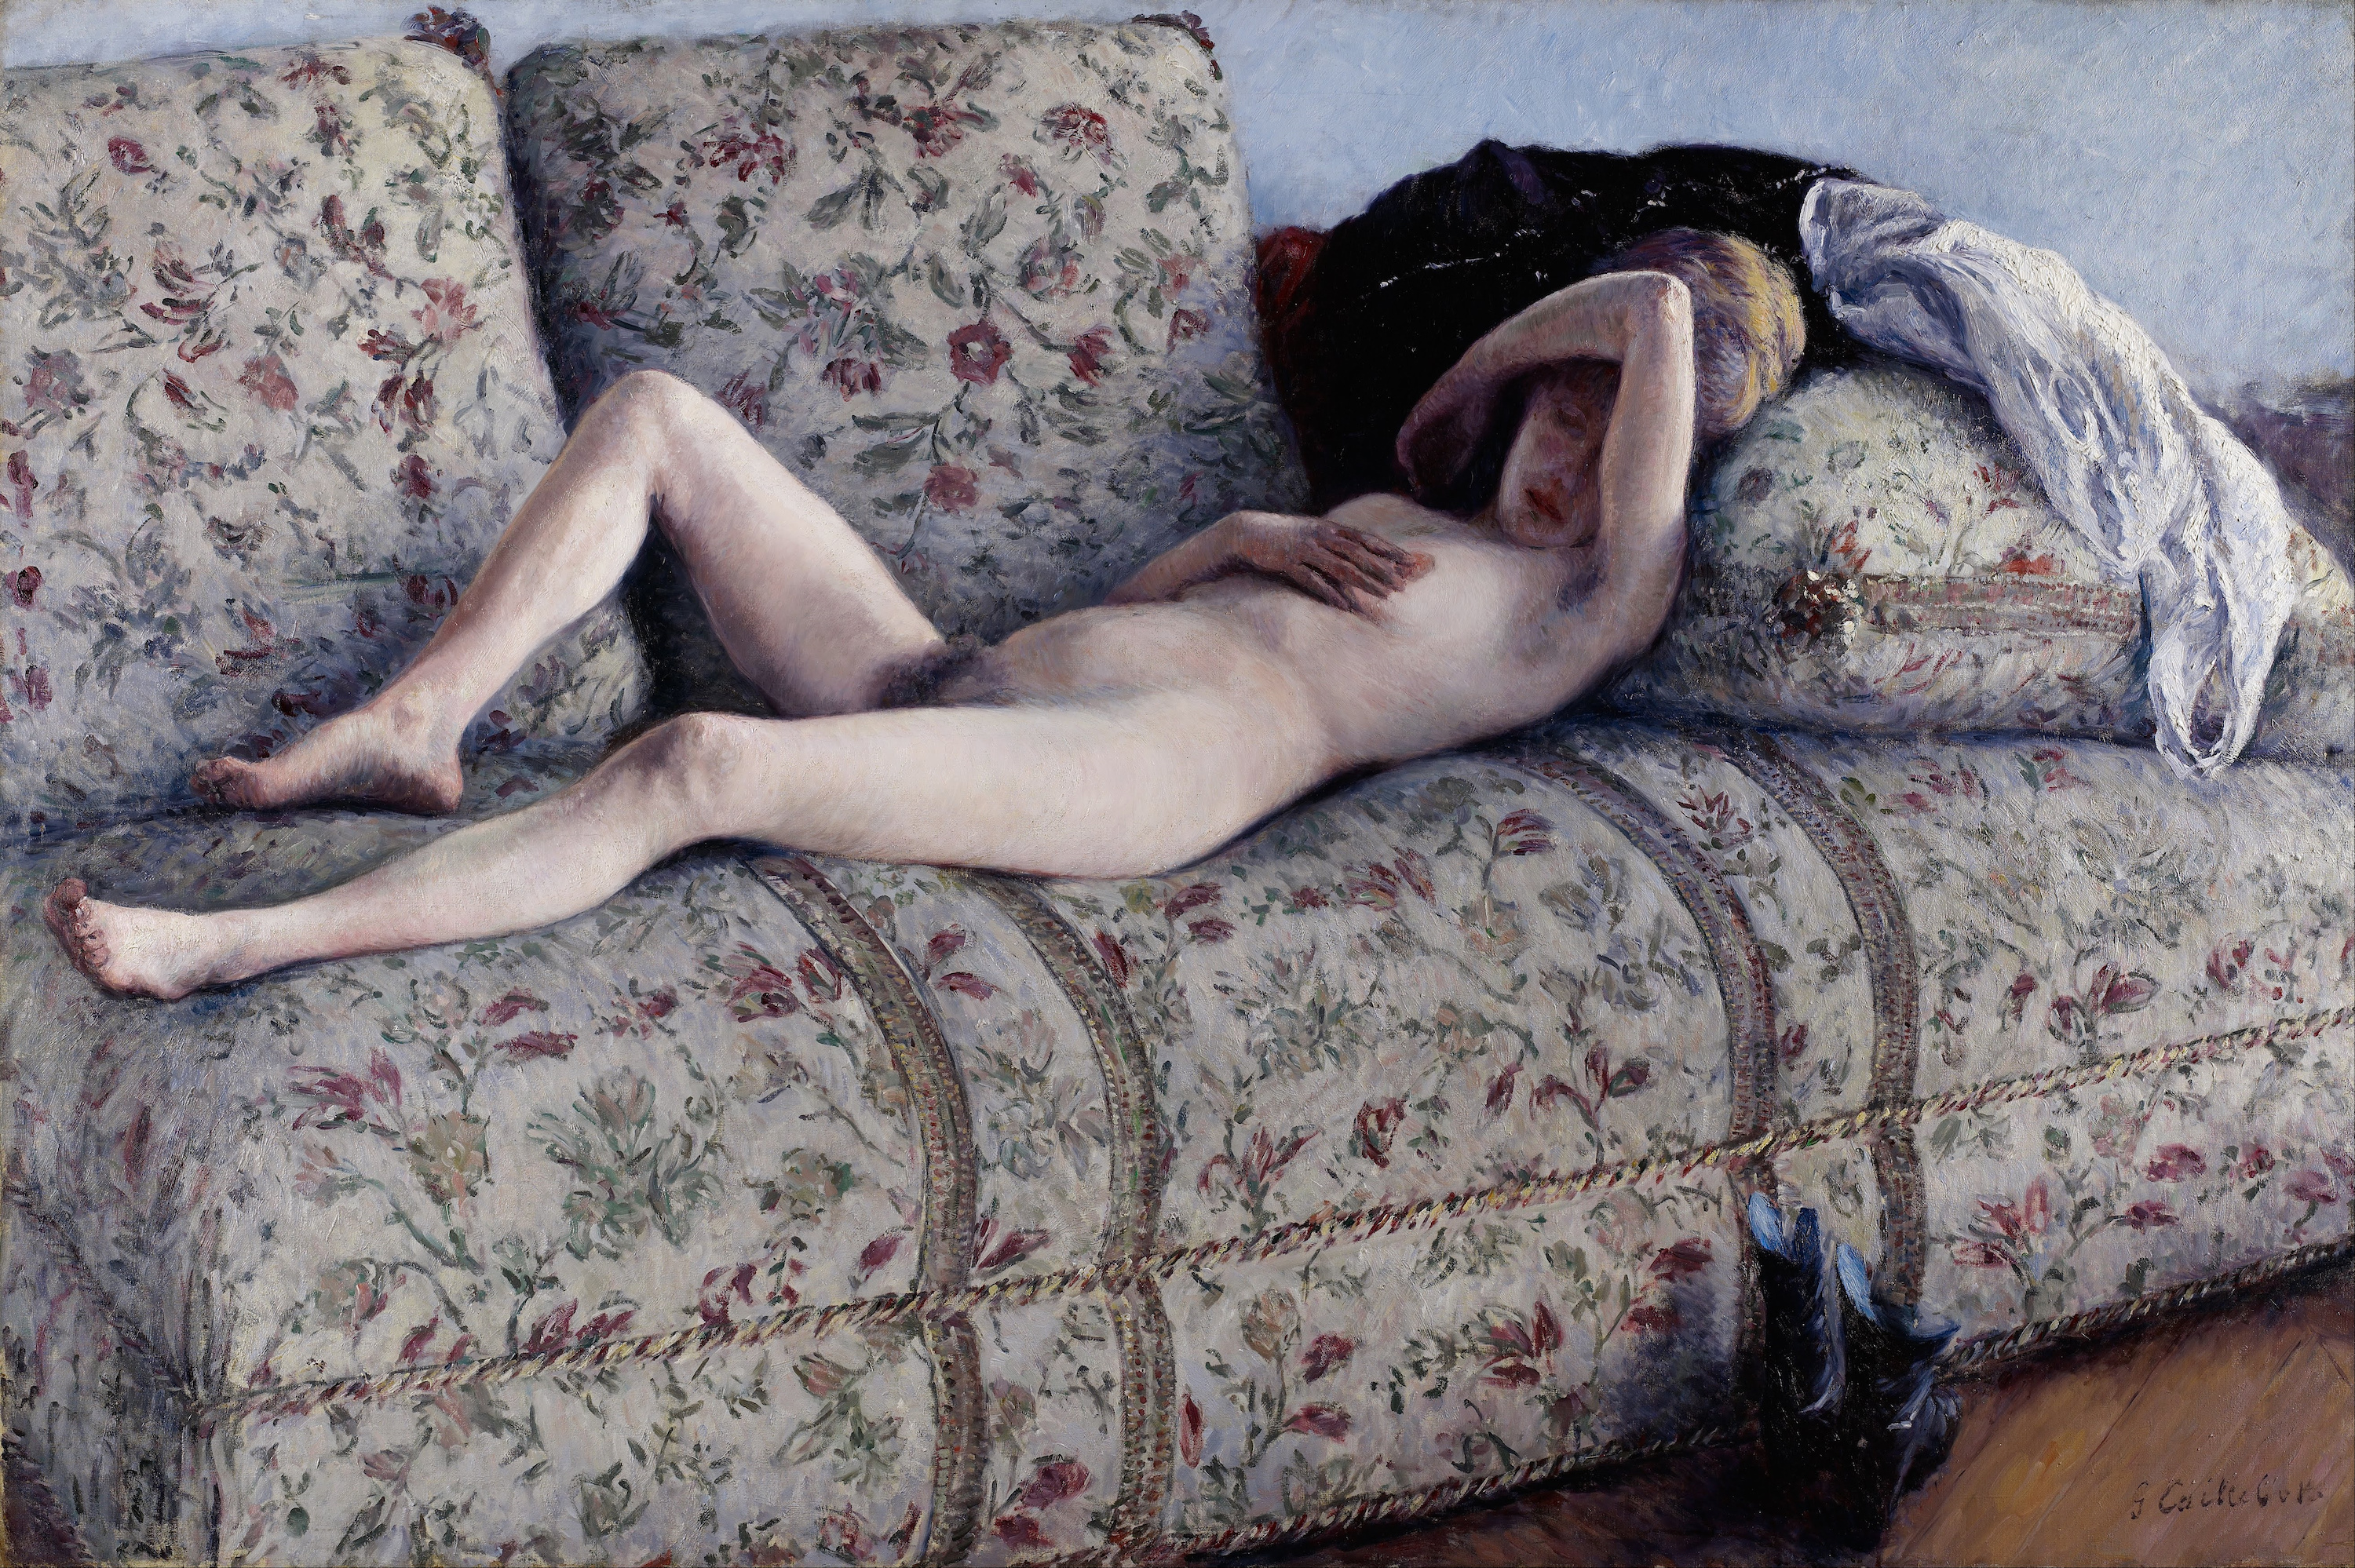 沙发上的裸女 by 古斯塔夫 卡勒波特 - 公元1880 - 129.54 x 195.58 cm 